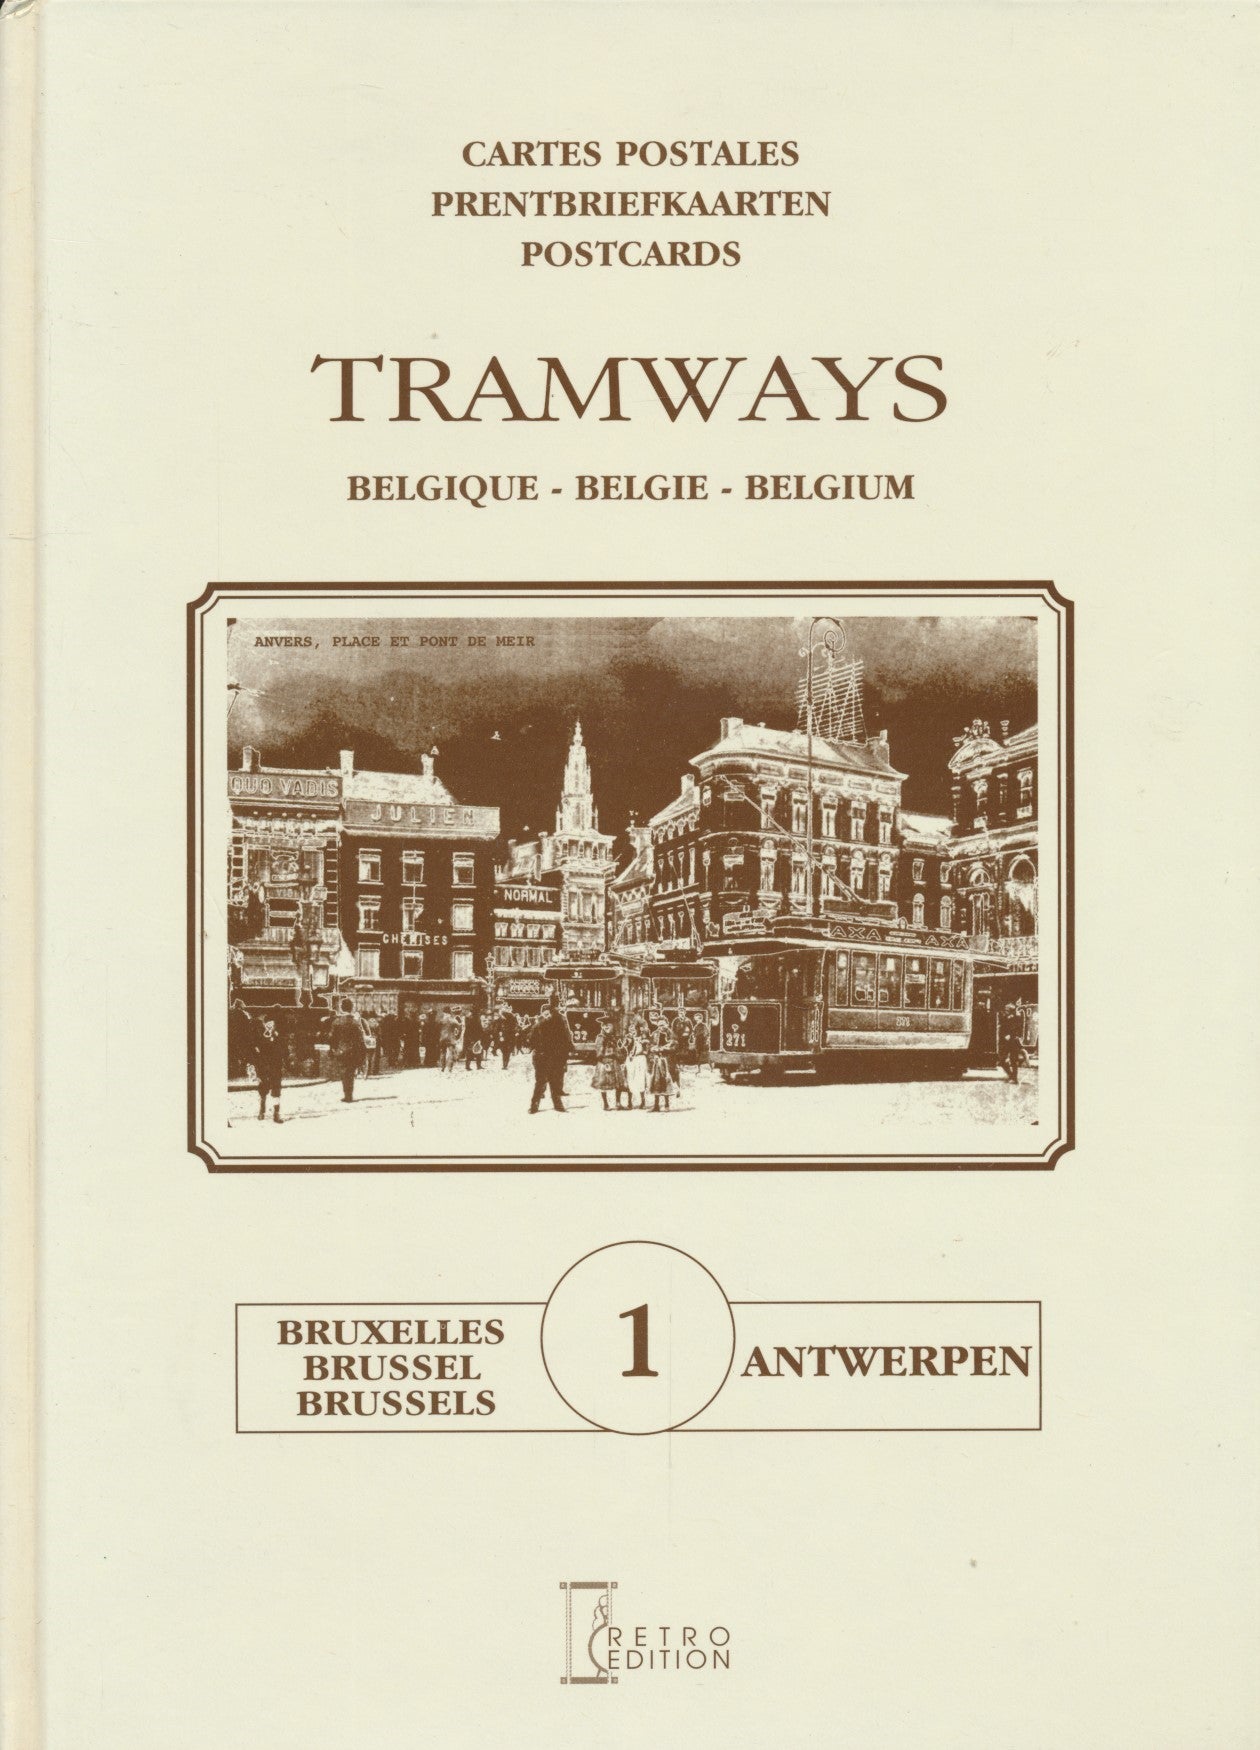 Cartes postales/Prentbriefkaarten/Postcards; Tramways Belgique/Belgie/Belgium; Tome 1